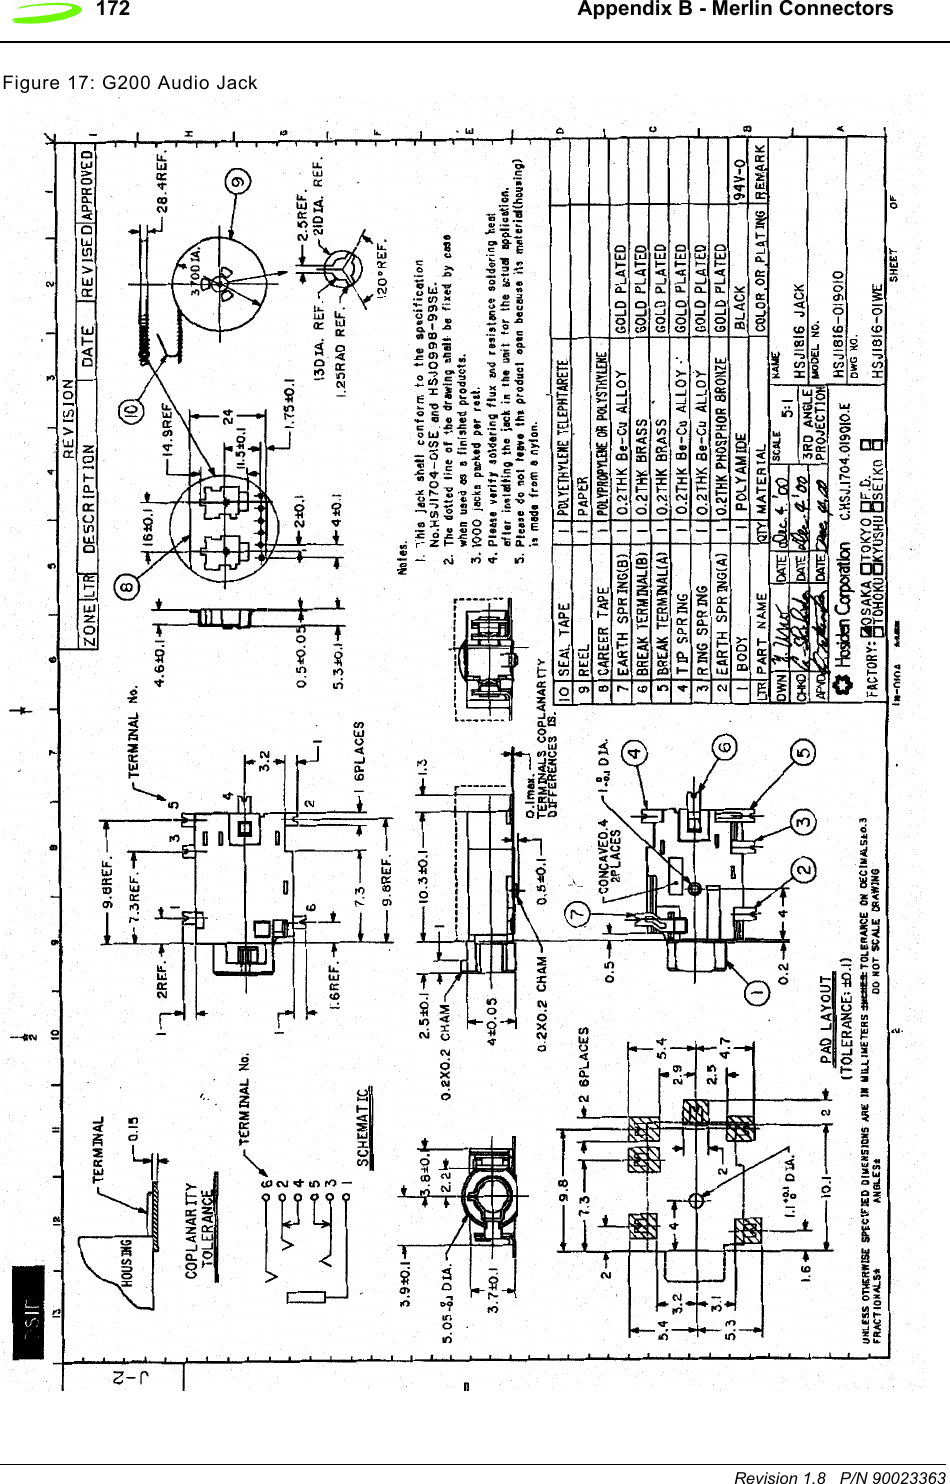 172   Appendix B - Merlin ConnectorsRevision 1.8   P/N 90023363Figure 17: G200 Audio Jack